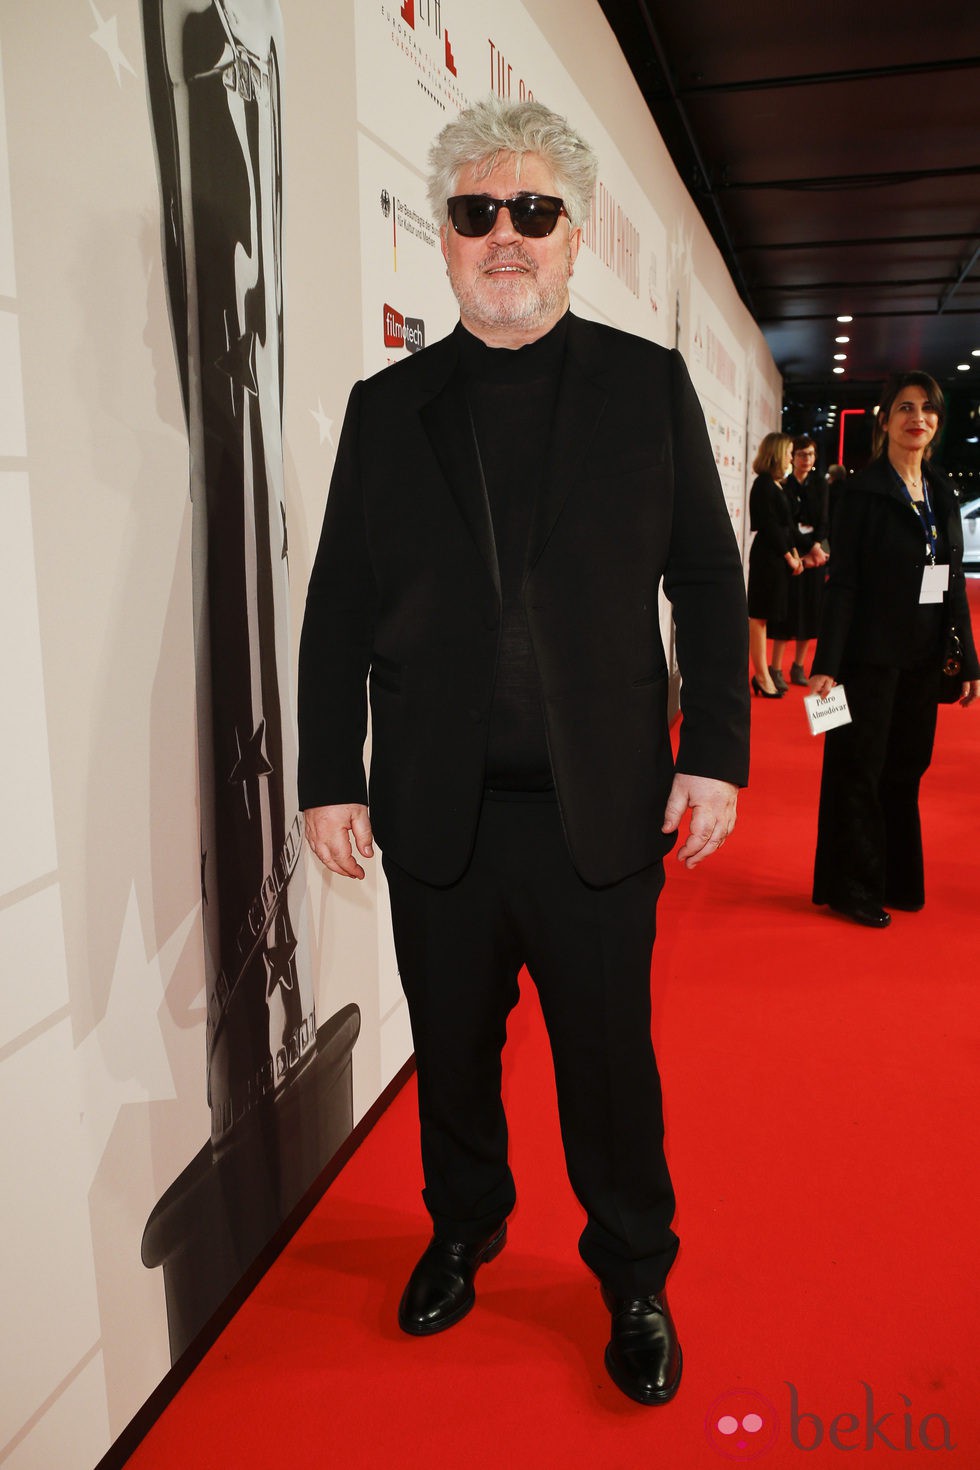 Pedro Almodóvar en los Premios del Cine Europeo 2013